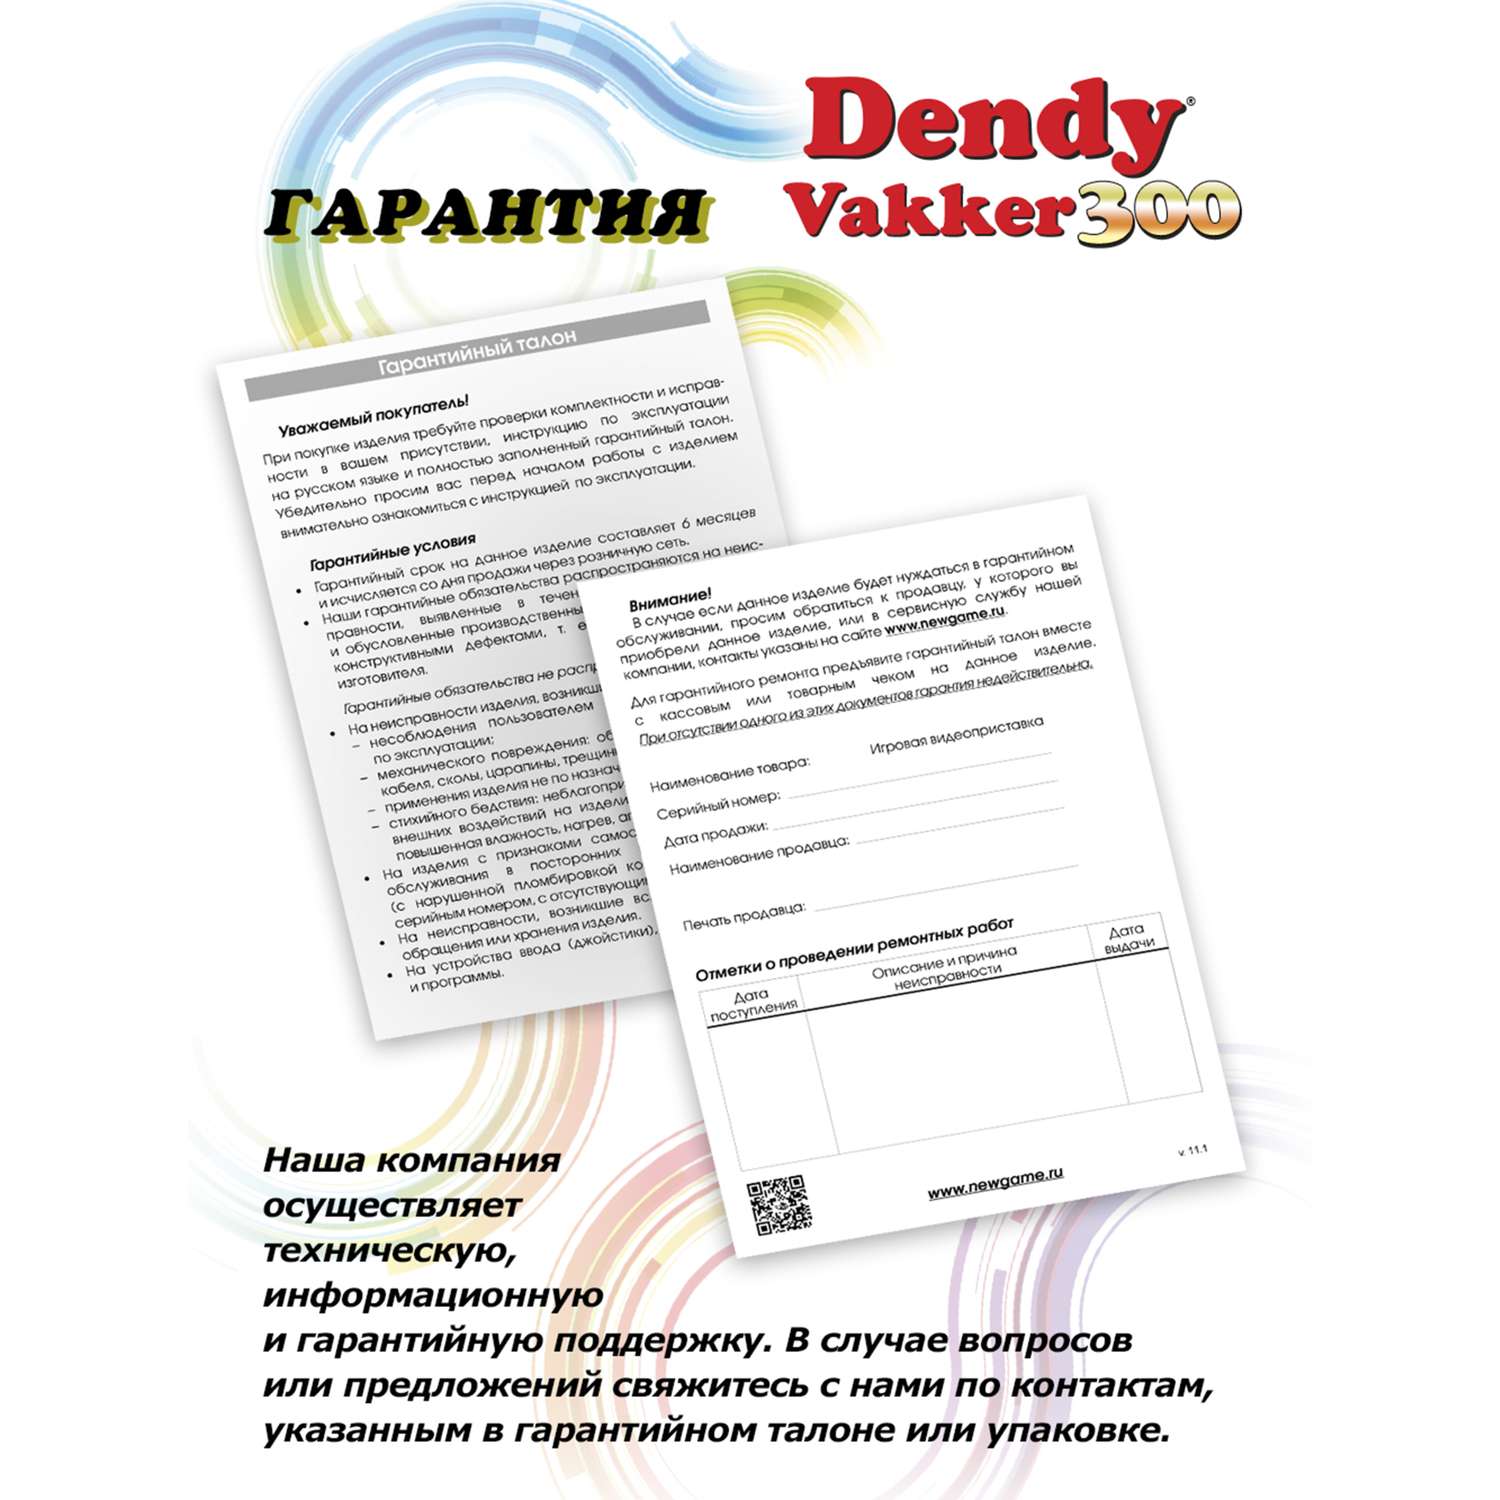 Игровая приставка Dendy Dendy Vakker 300 игр - фото 9